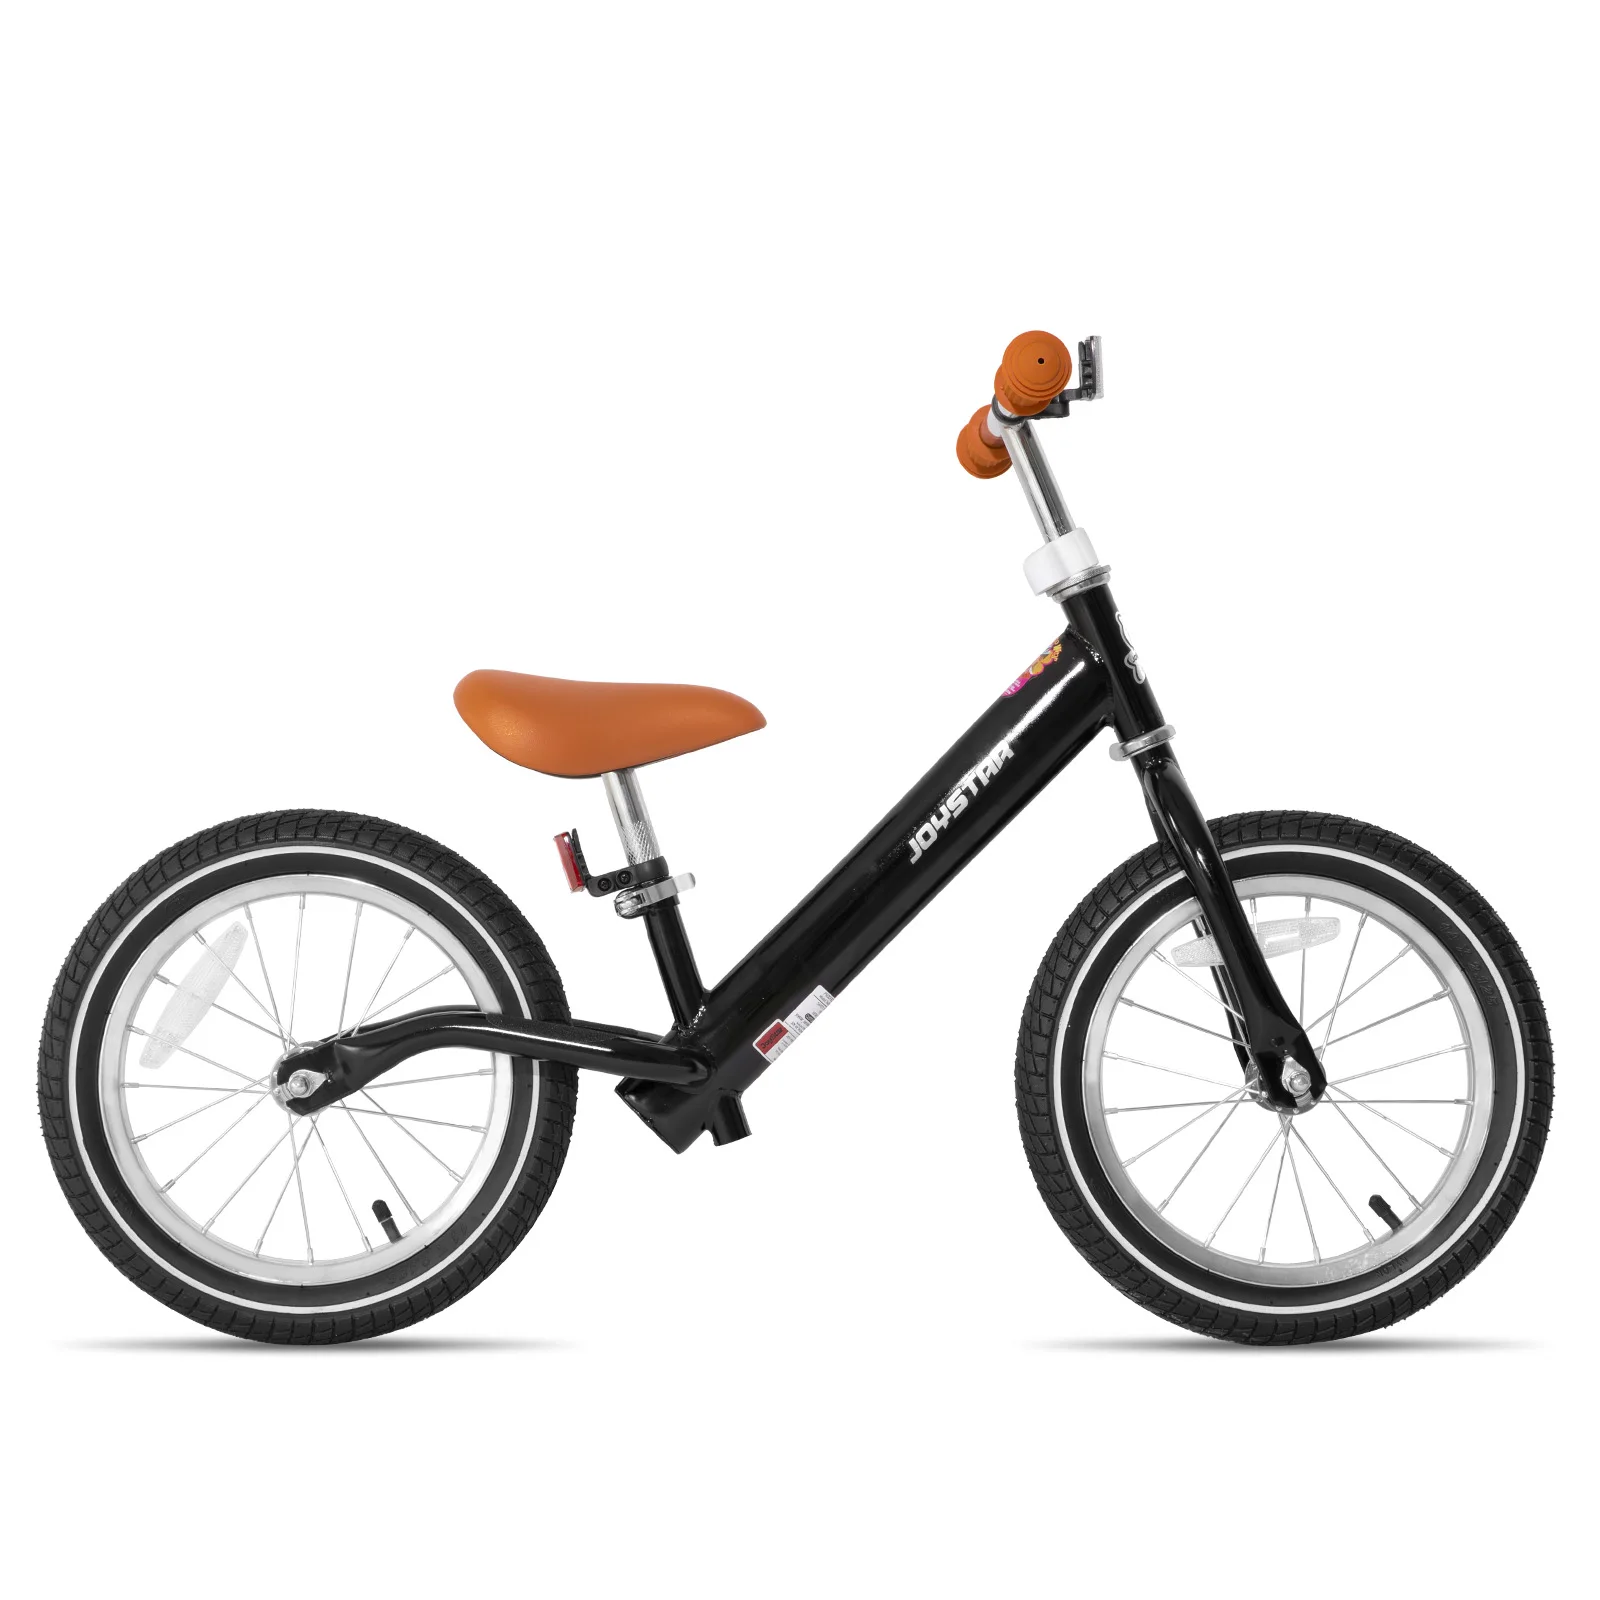 

Балансировочный велосипед JOYSTAR 14/16 дюйма для детей 3-9 лет, мальчиков и девочек. Велосипед для детей старшего возраста. Без педали Sport для тренировки, езды на велосипеде